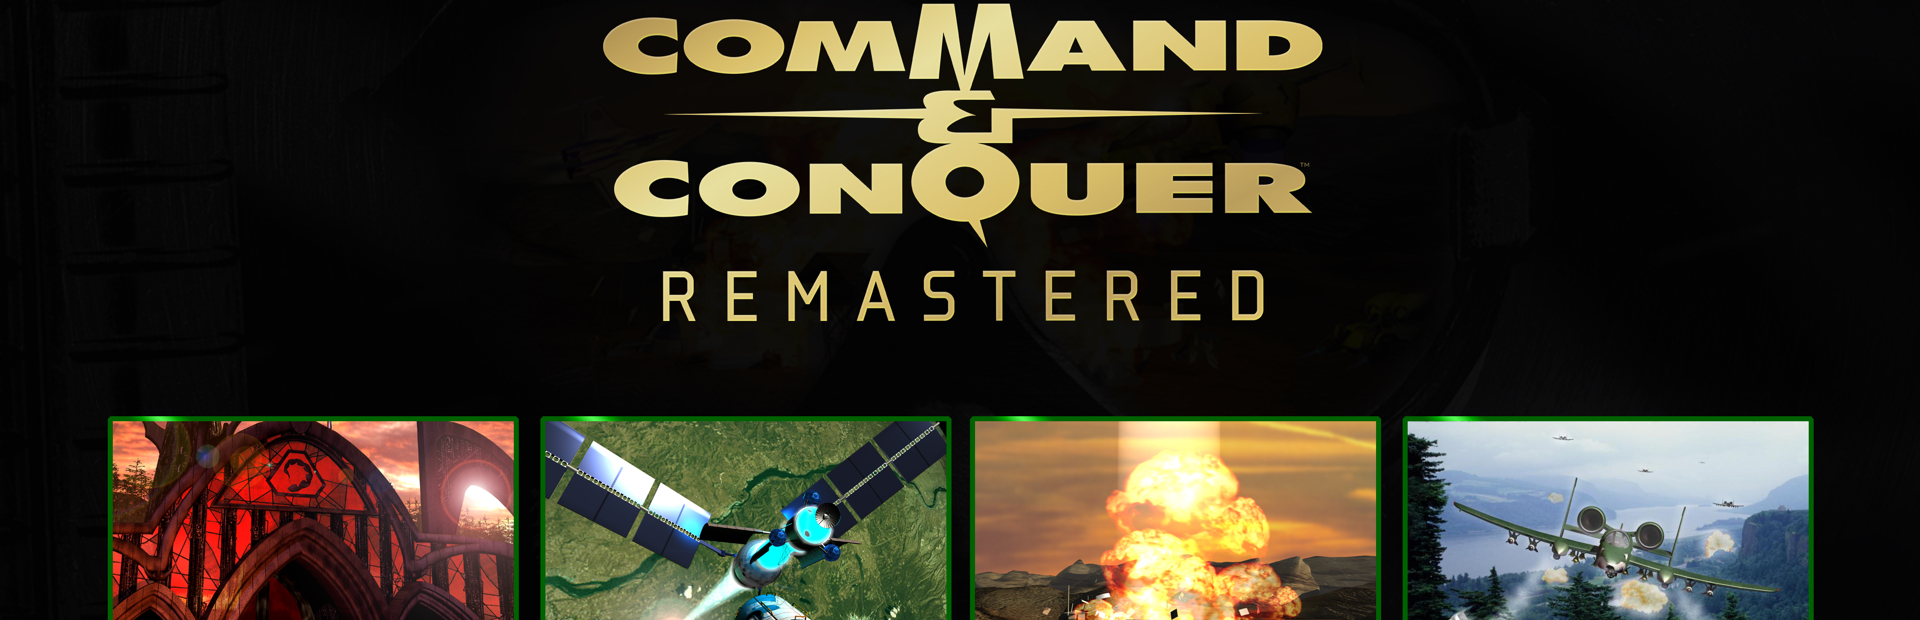 دانلود بازی Command & Conquer Remastered Collection برای پی سی | گیمباتو